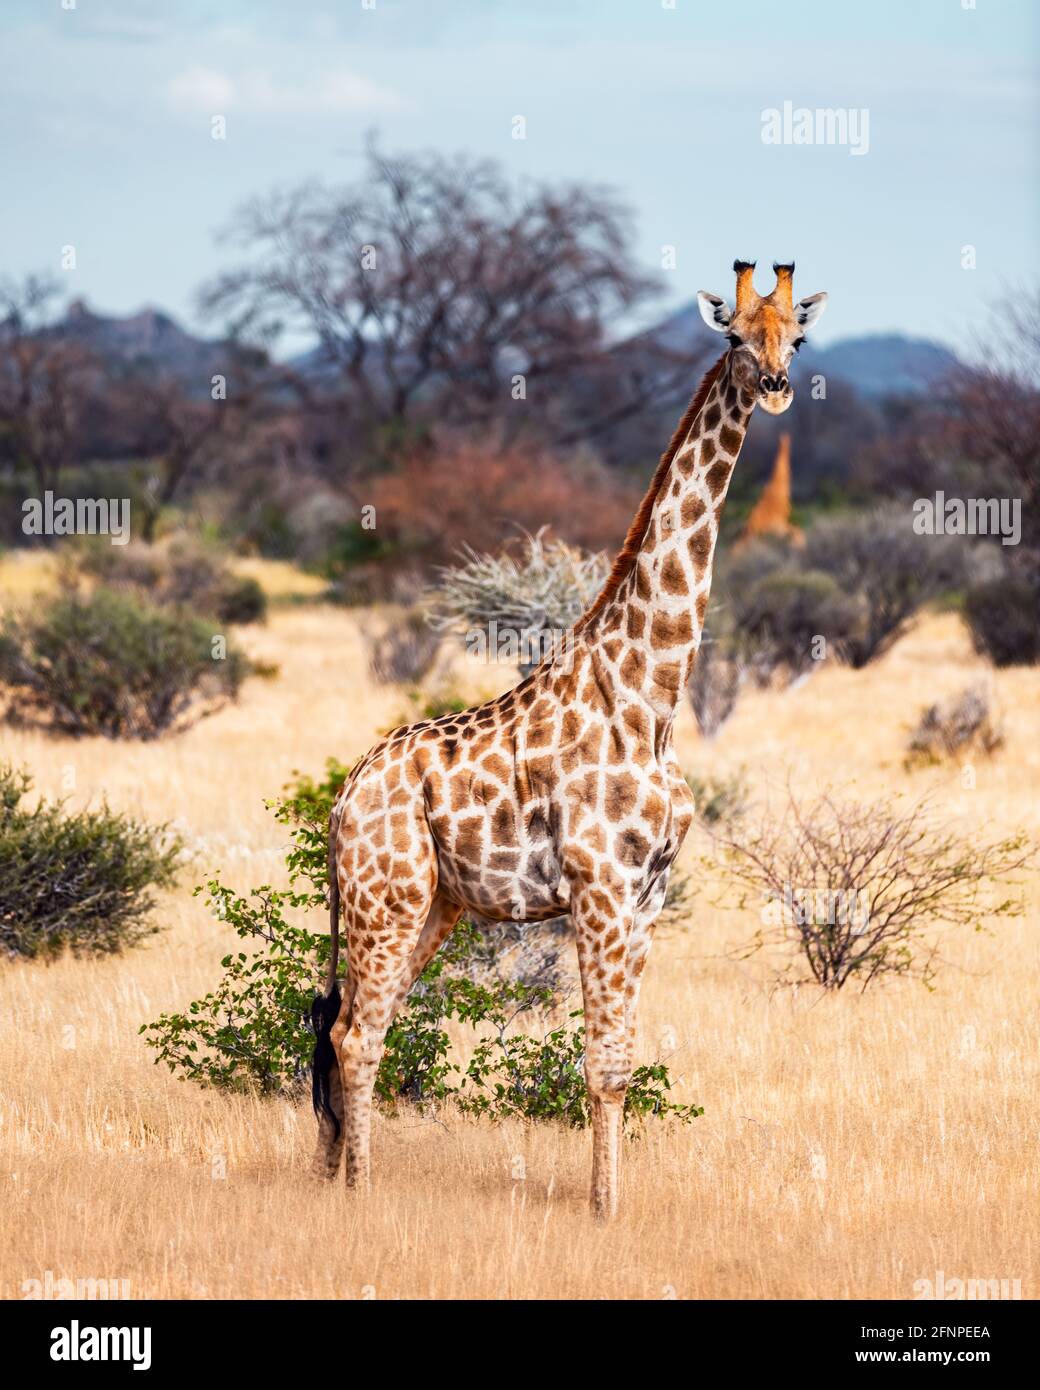 Giraffa giovane che cammina nel cespuglio africano Foto Stock